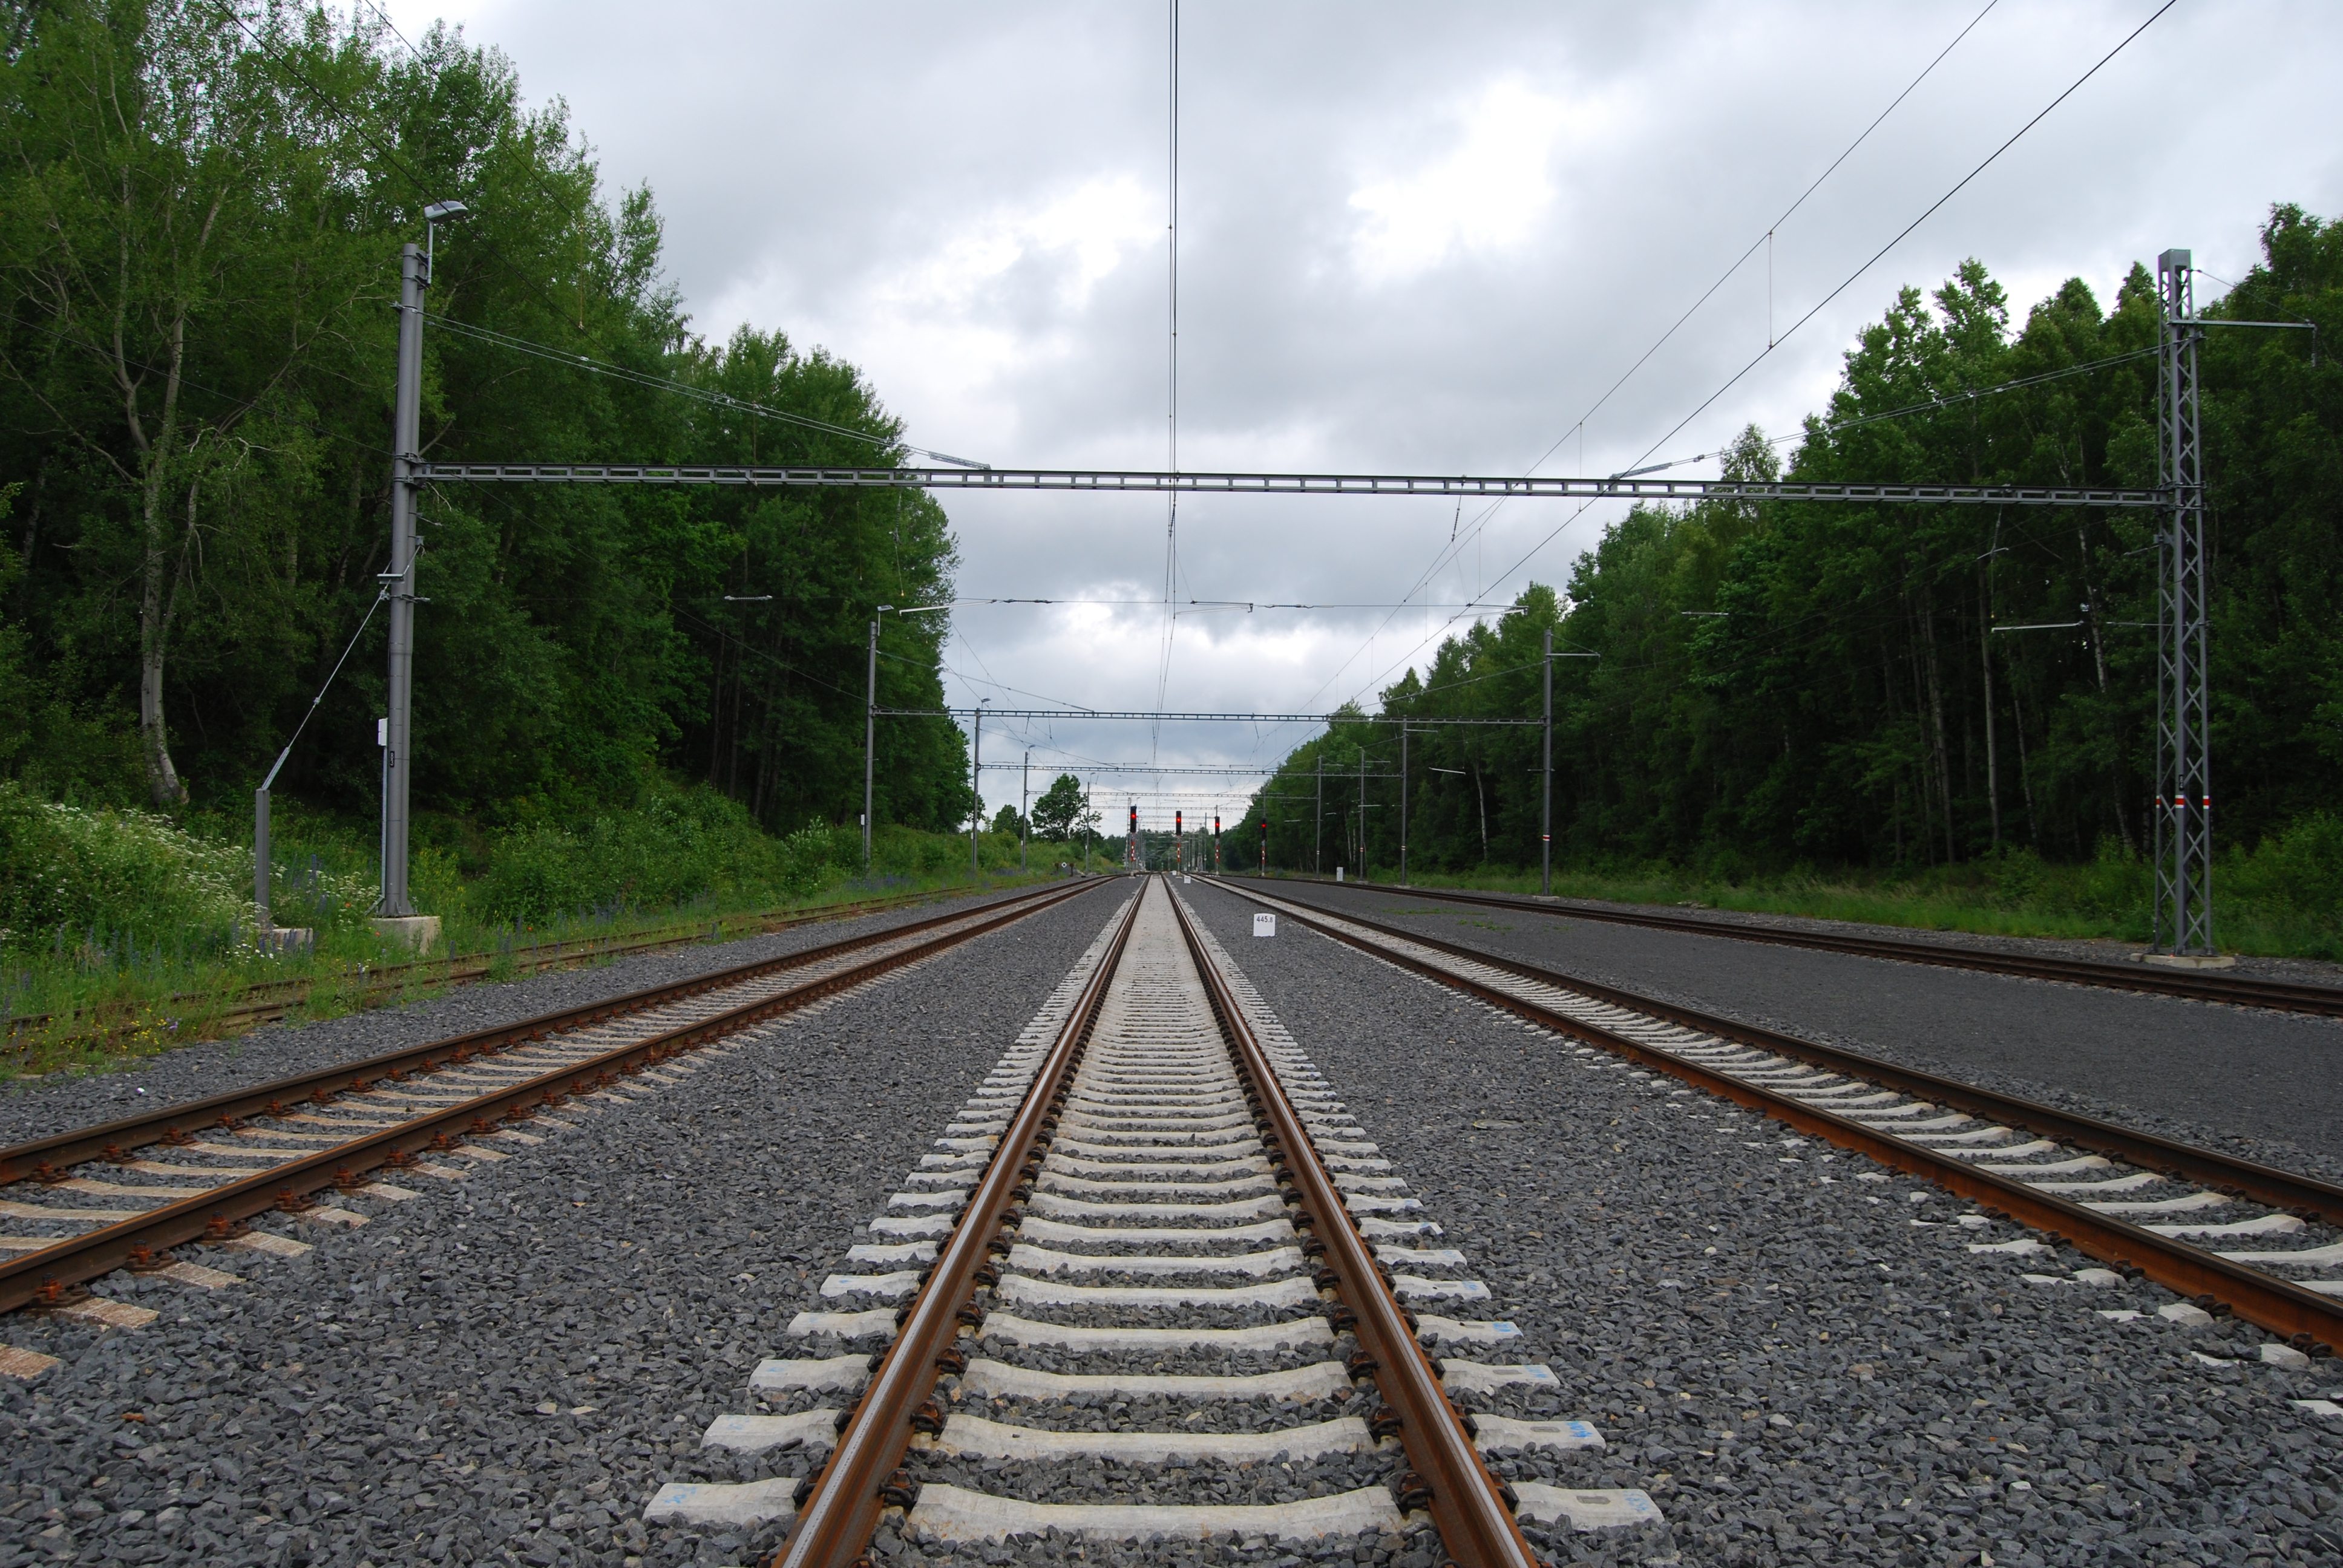 Správa železnic a DB Netz AG vypisují tendr na zpracování dokumentace nové trati Drážďany – Praha